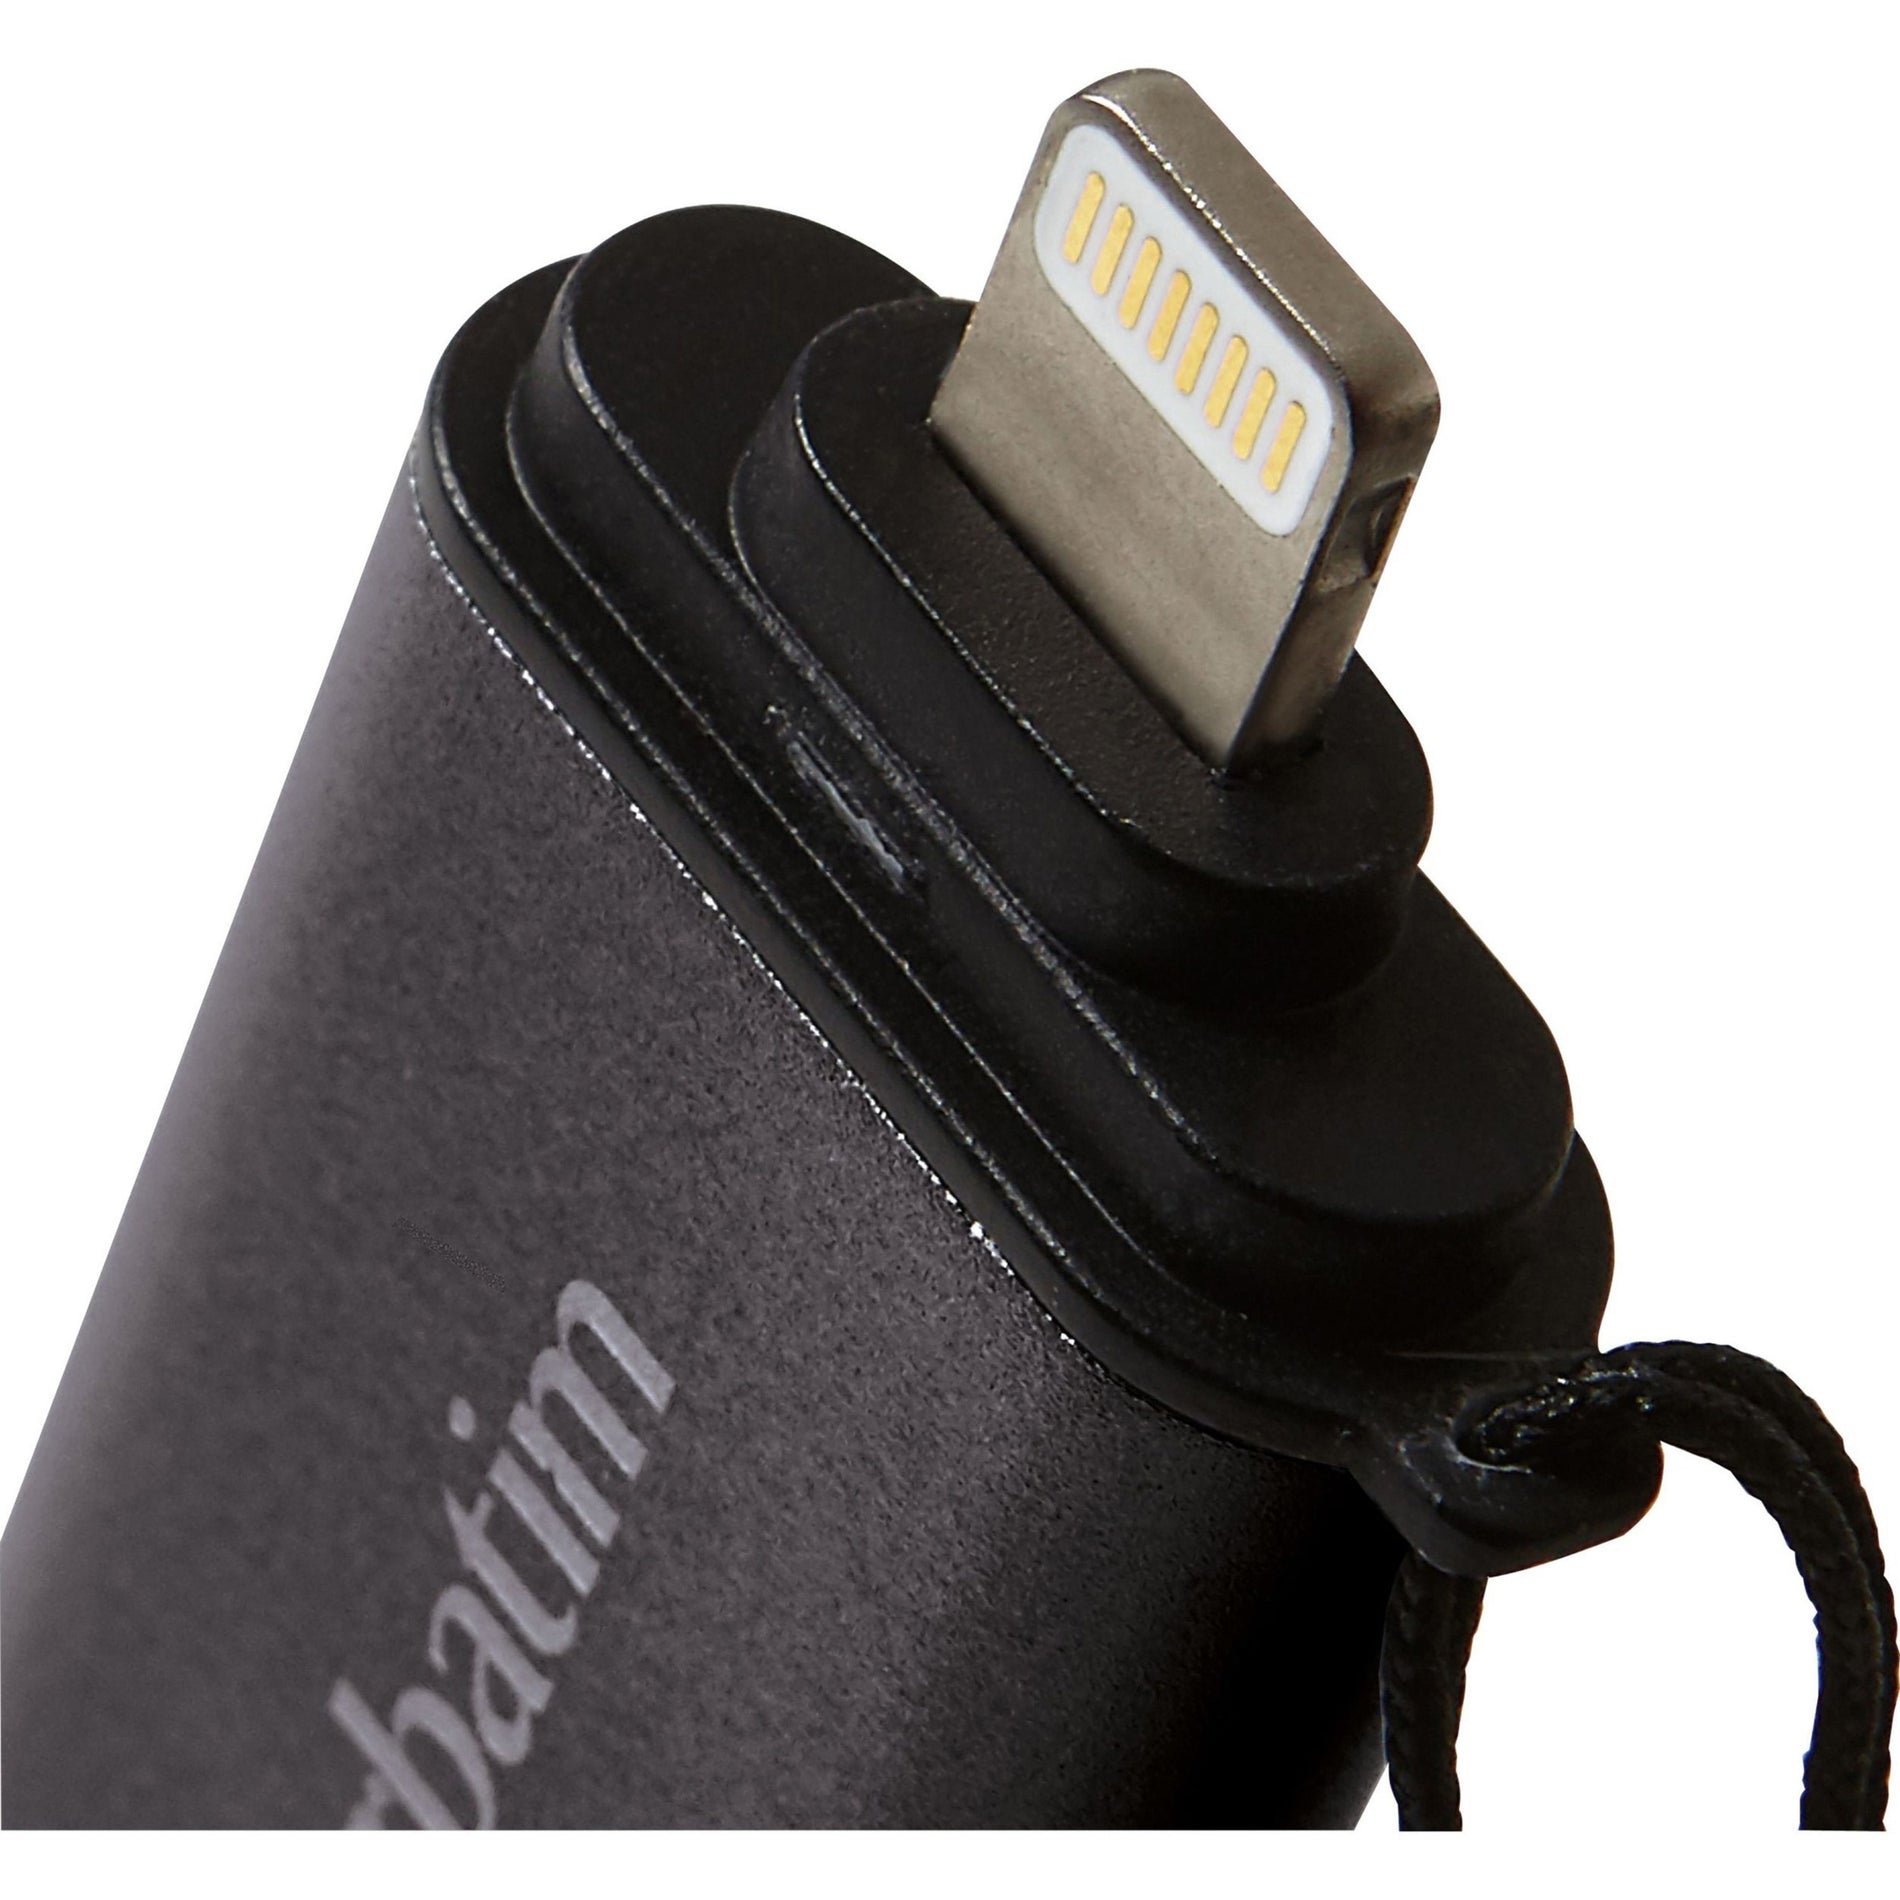 Verbatim 49301 Store-N-Go Dual USB 3.0 Flash Drive, 64GB, Graphite